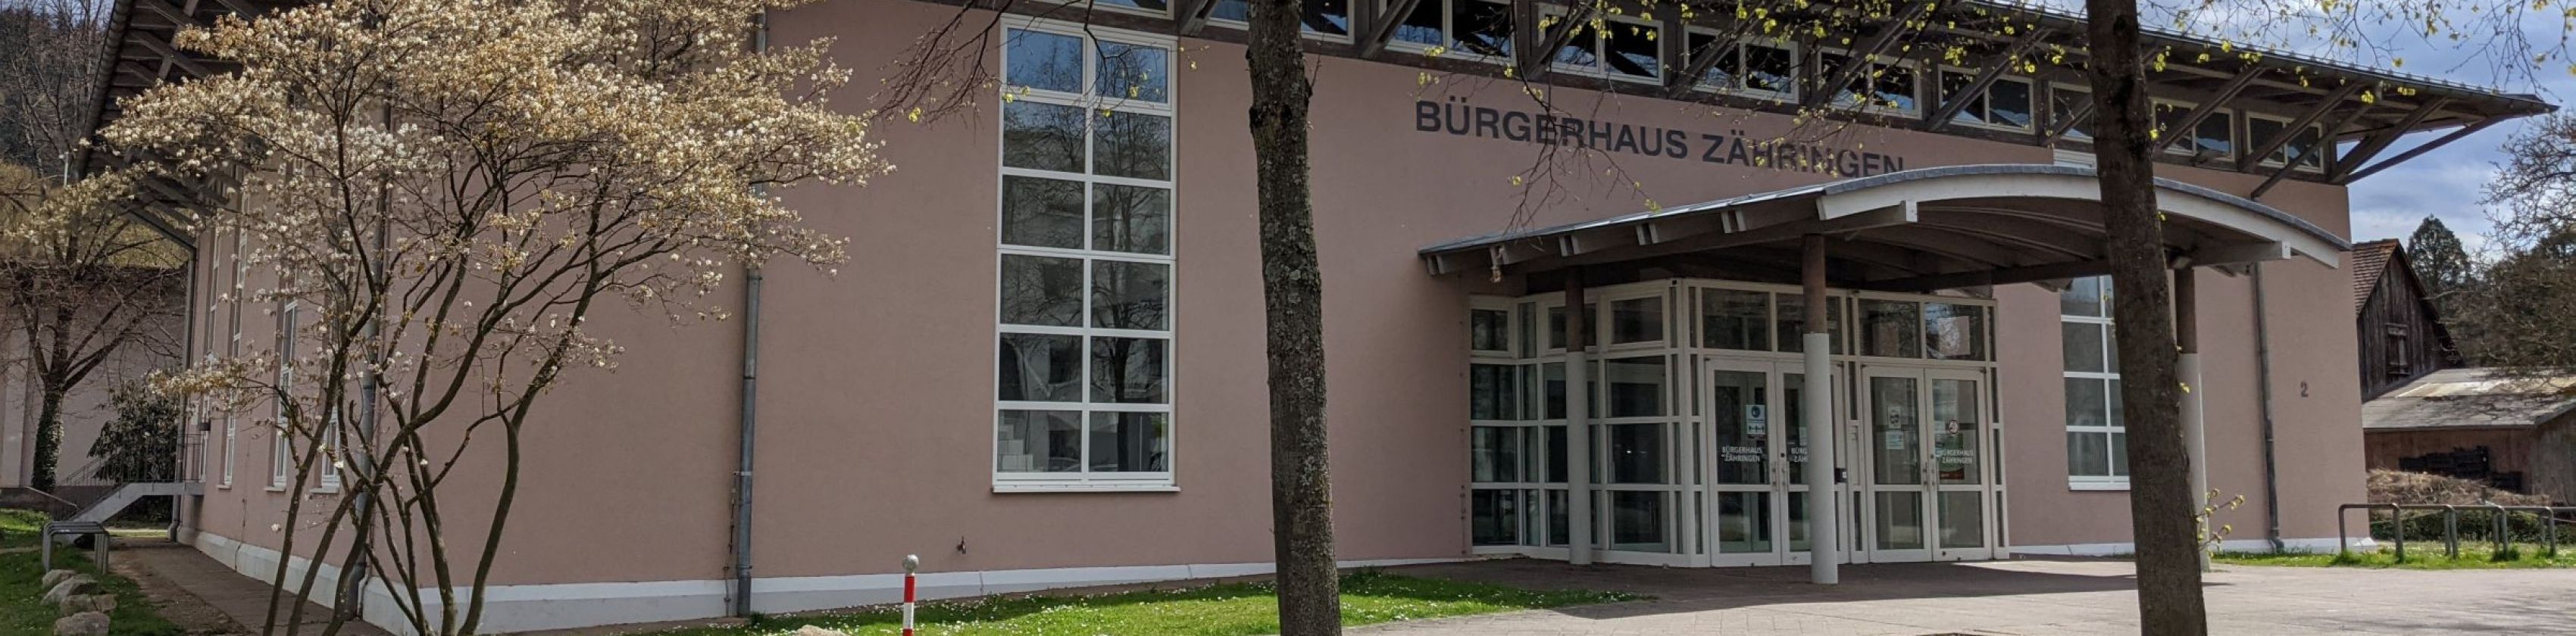 Bürgerhaus Zähringen